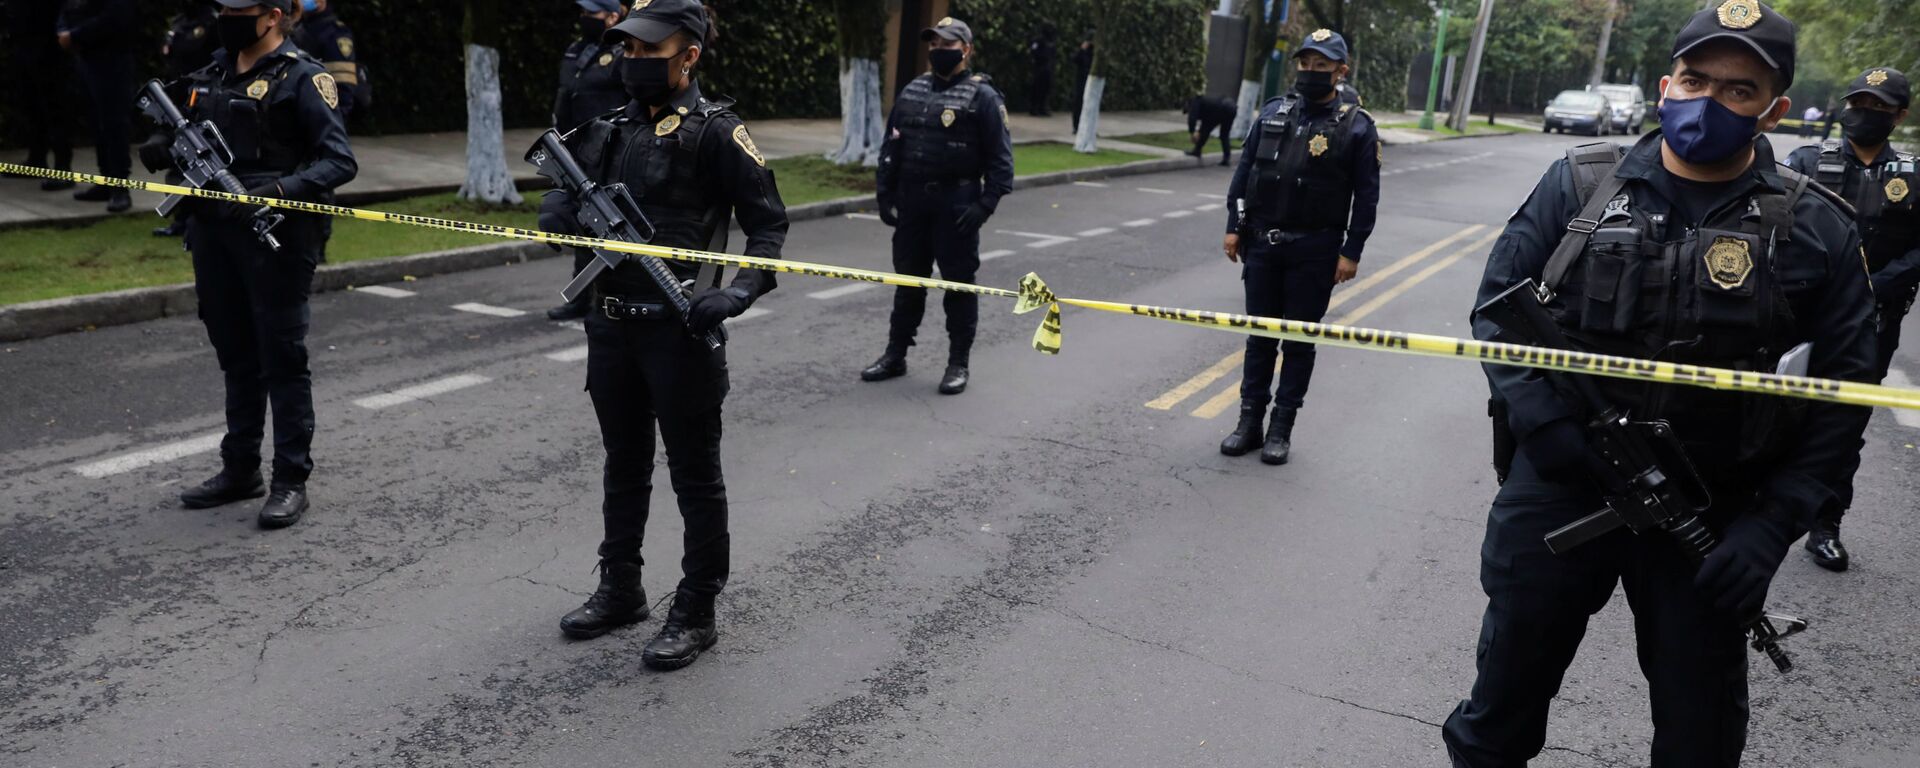 Oficiales de policía vigilan la escena del crimen después de un intento de asesinato del jefe de policía de la Ciudad de México, Omar García Harfuch - Sputnik Mundo, 1920, 14.07.2020